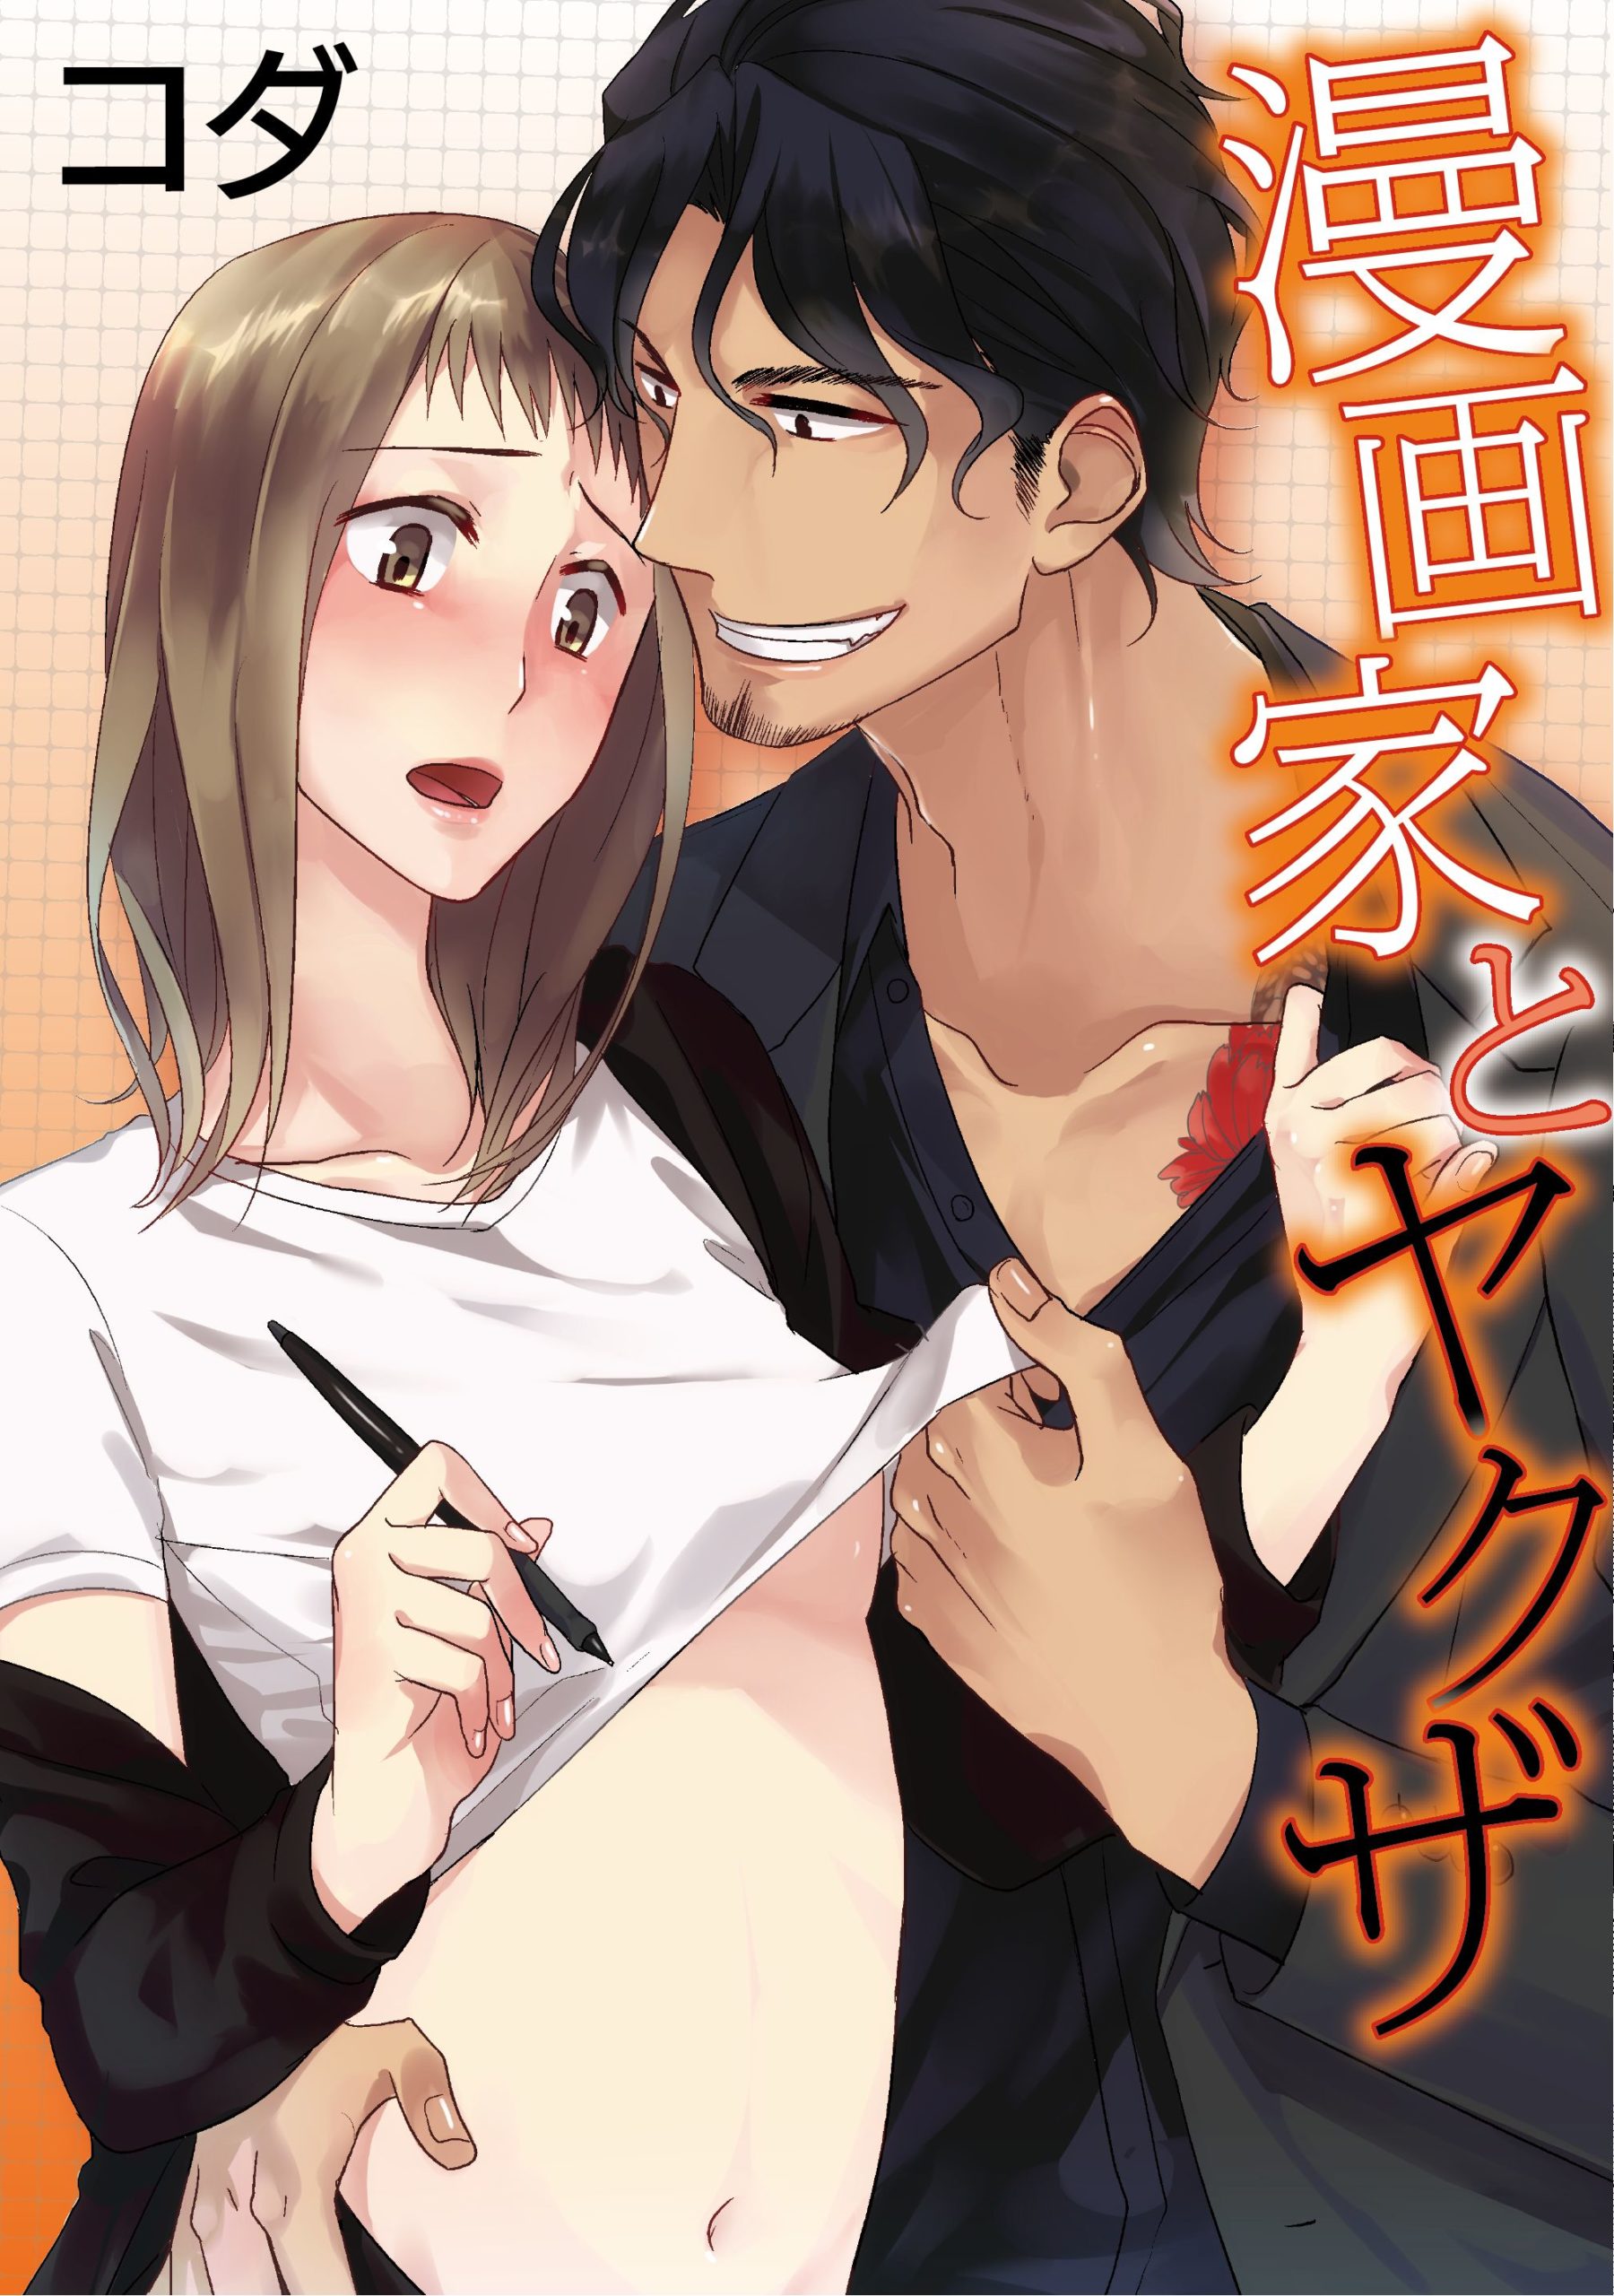 Adult japan manga